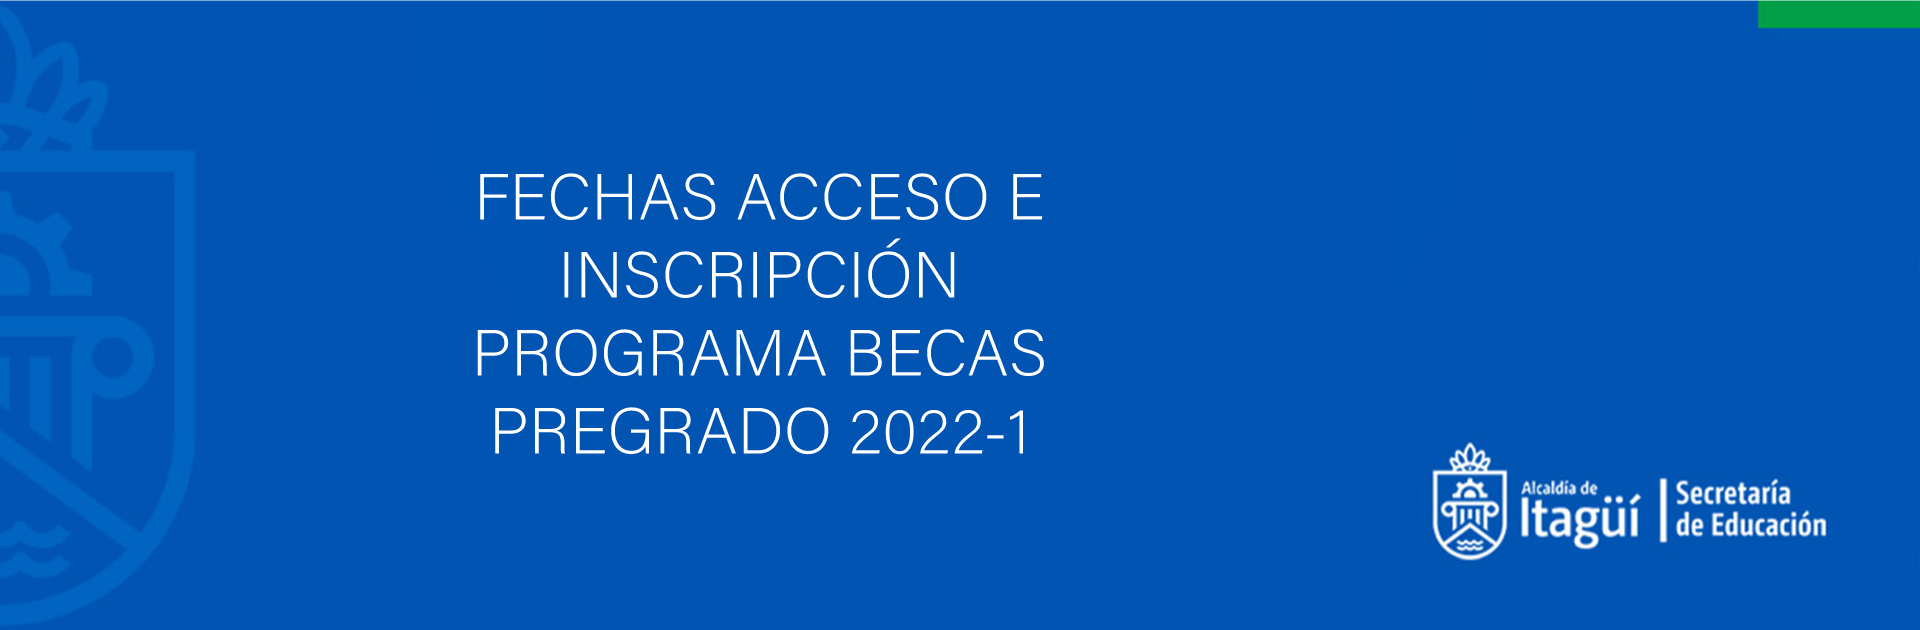 FECHAS ACCESO E INSCRIPCIÓN PROGRAMA BECAS PREGRADO 2022-1